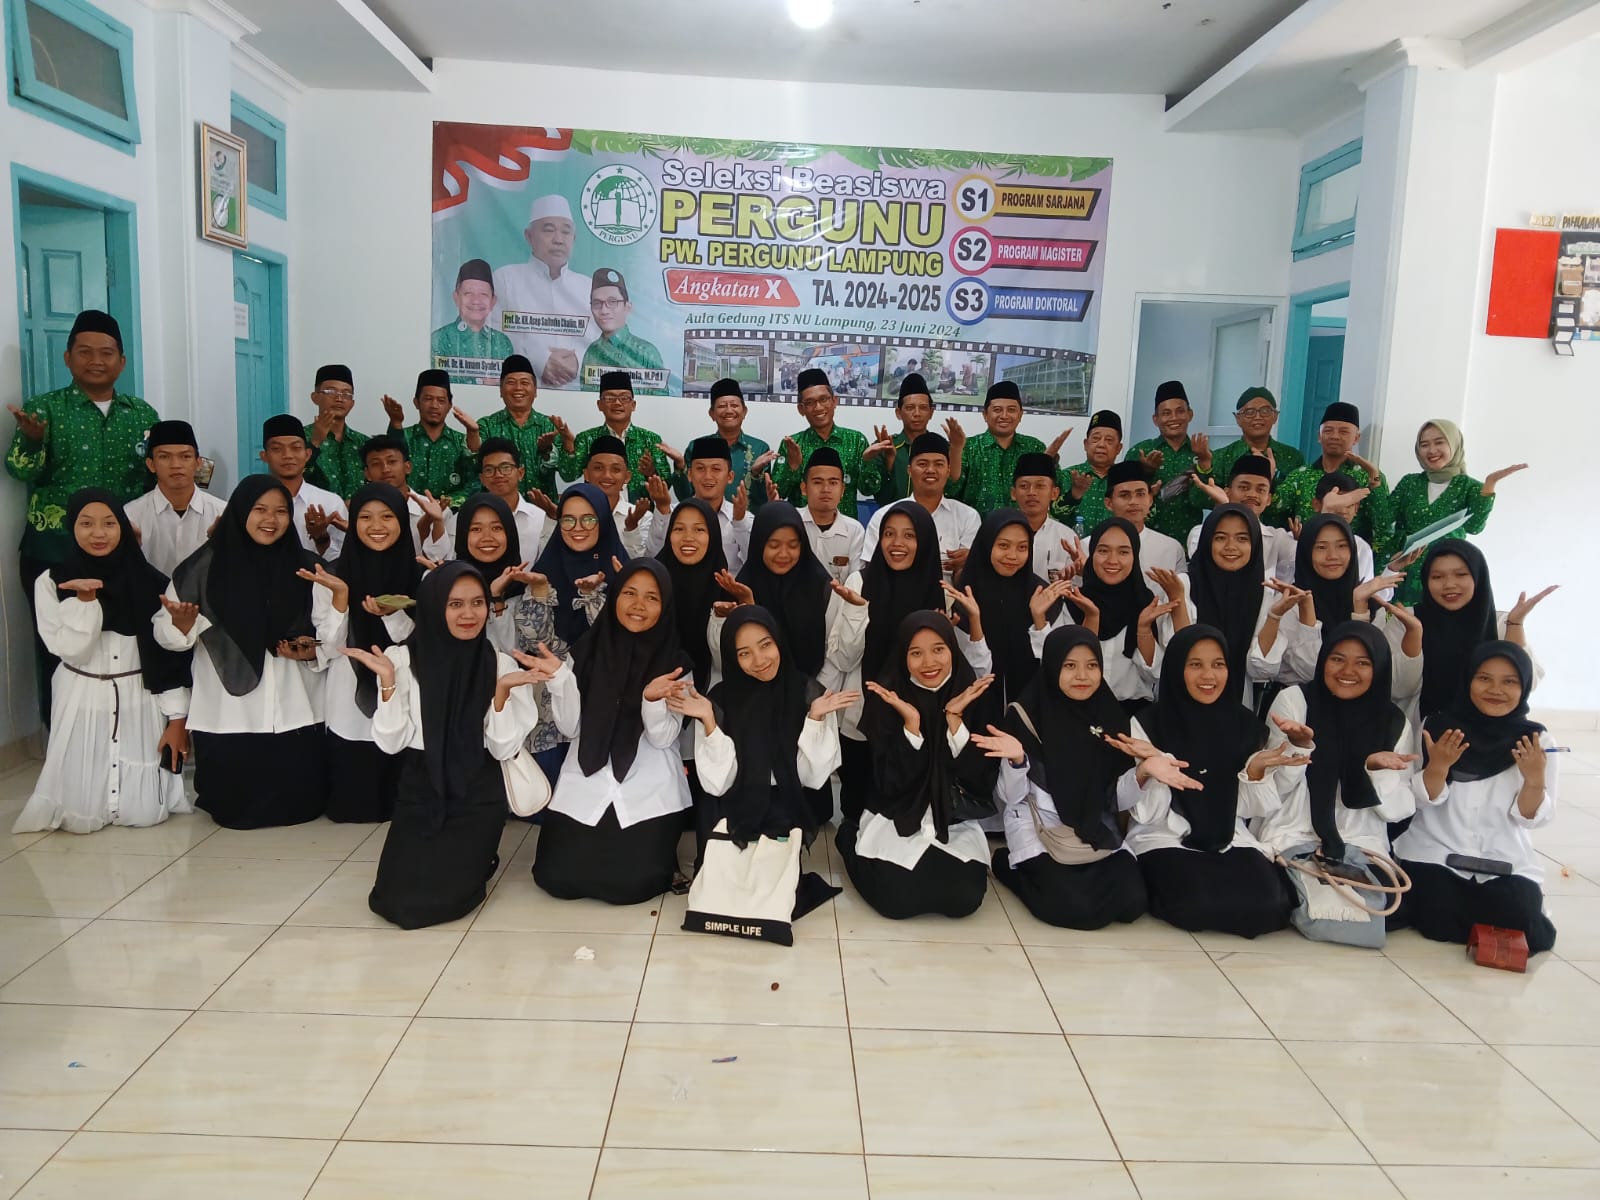 Program Wajib Kuliah Nahdliyin,Pergunu Lampung Lakukan Seleksi Beasiswa S1 Hingga S3